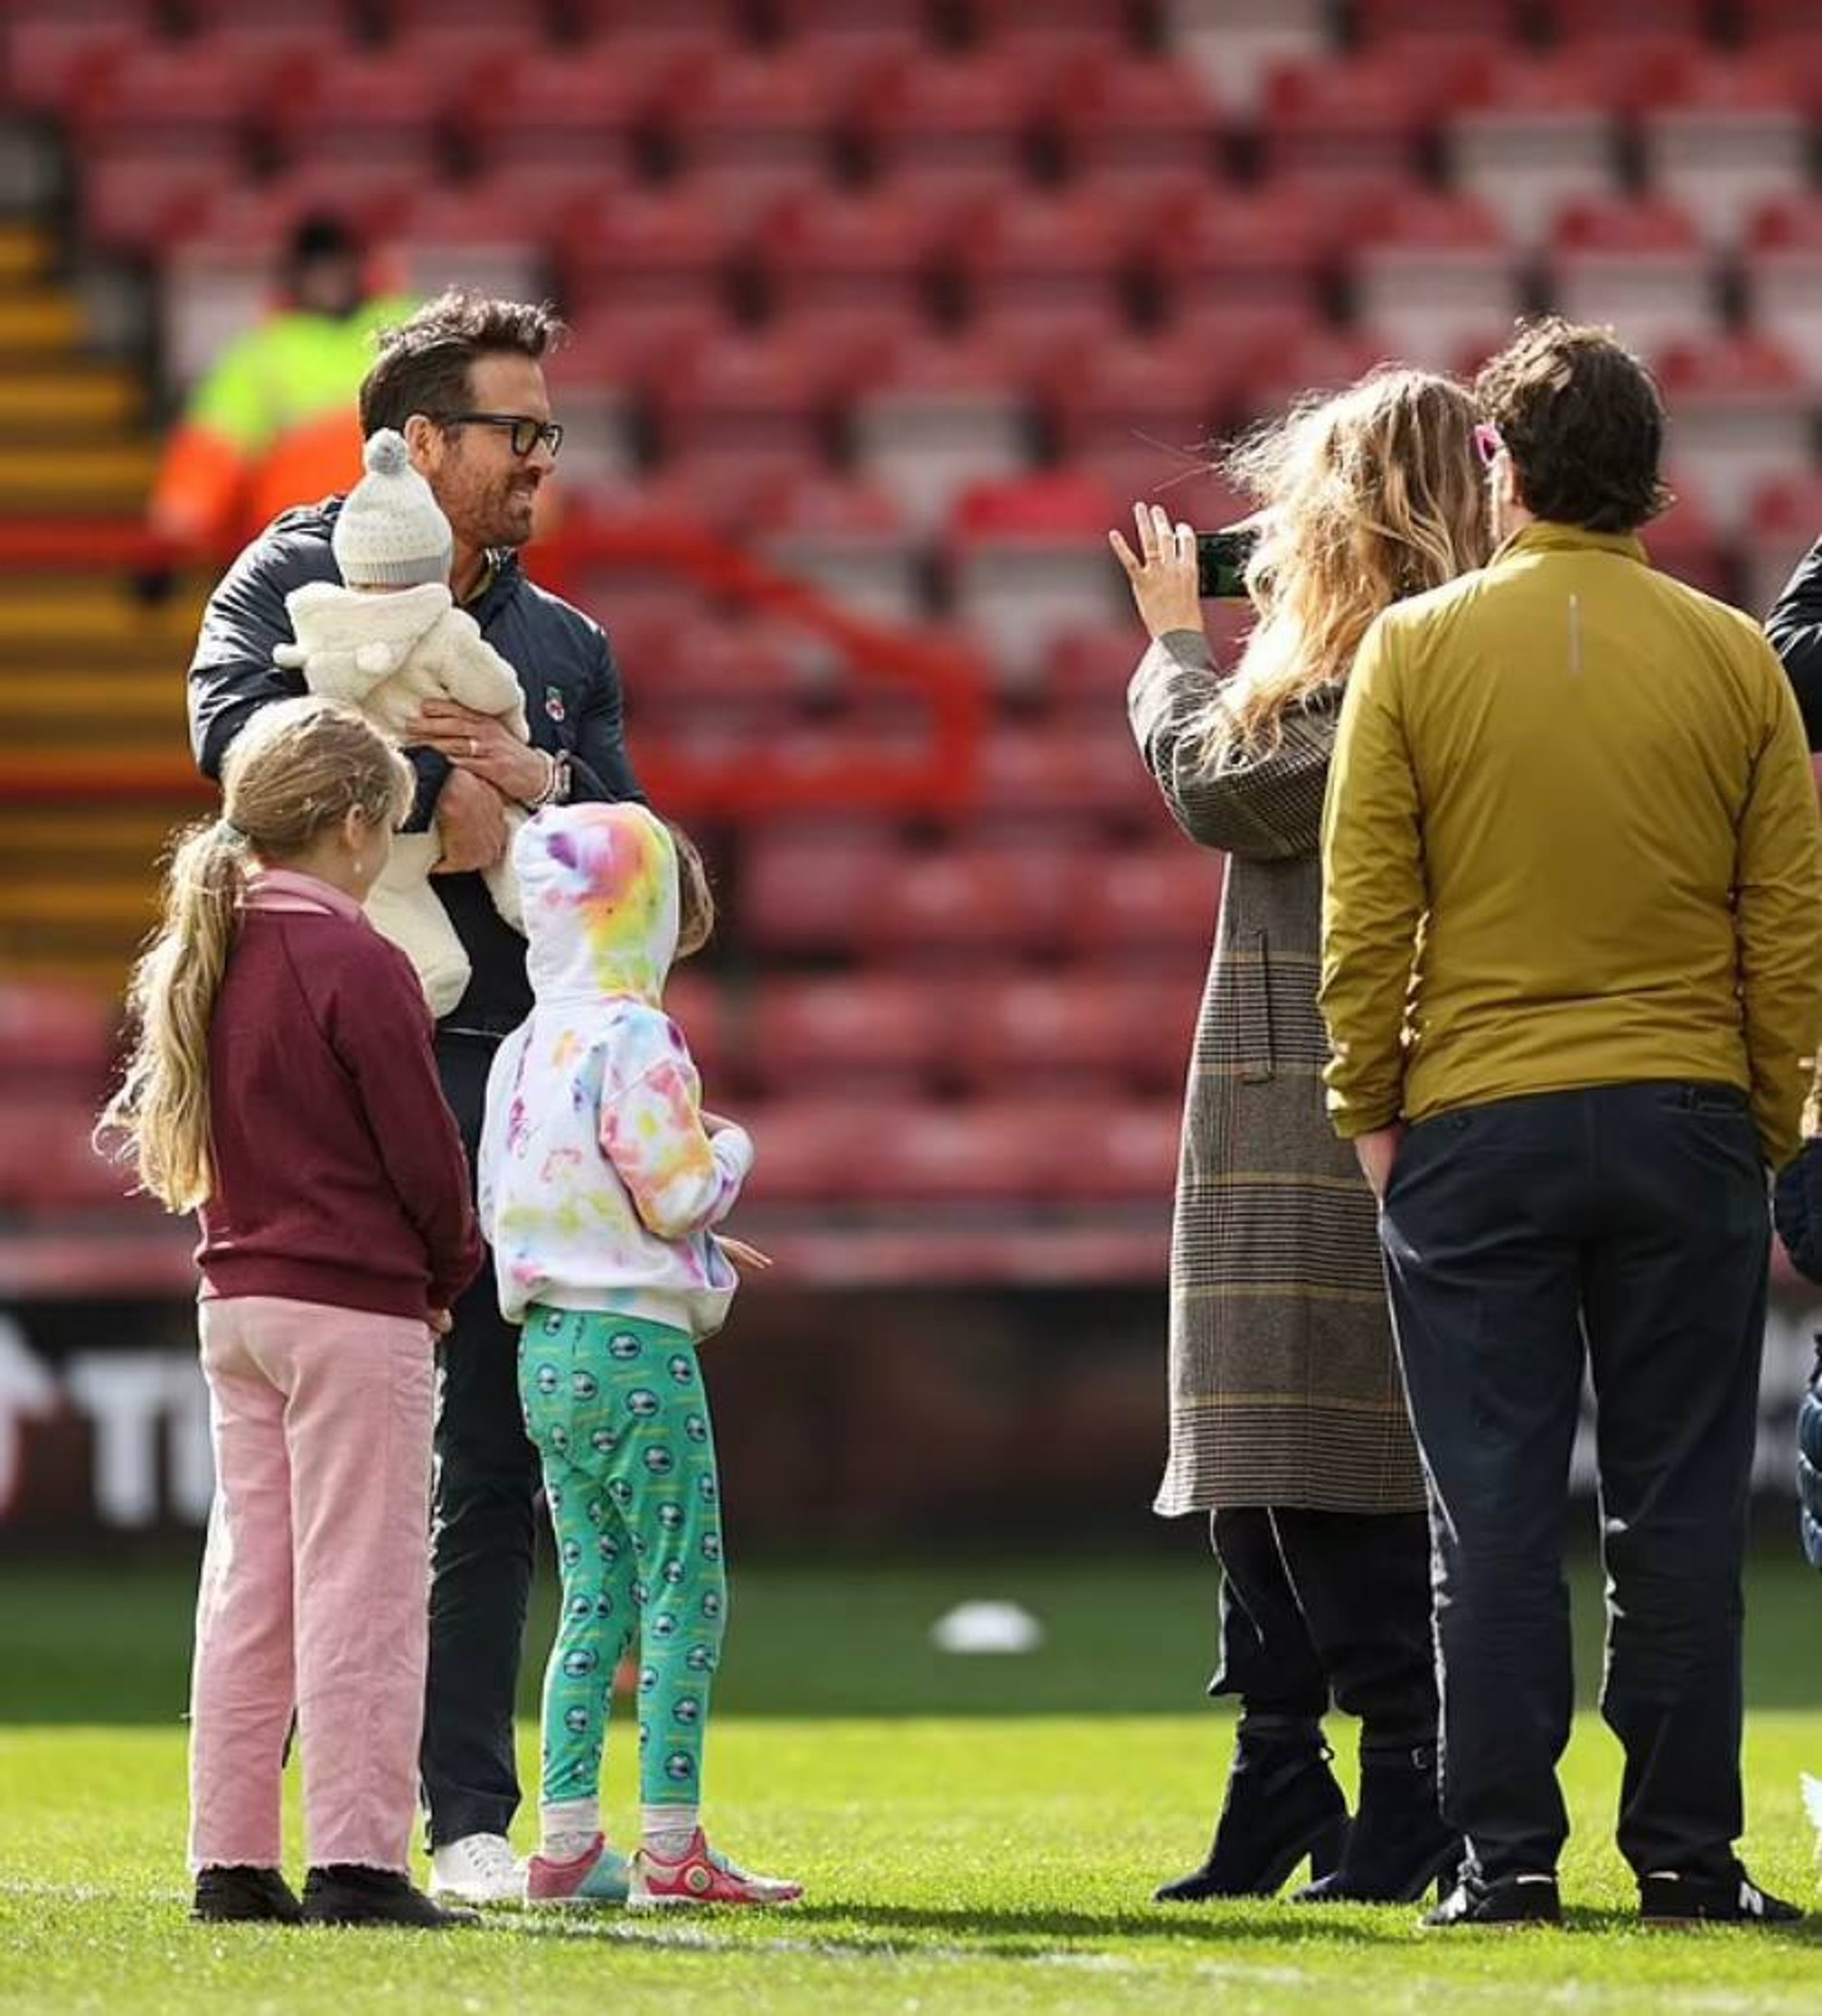 Райан Рейнольдс и Блейк Лайвли с дочерьми
Фото: Daily Mail